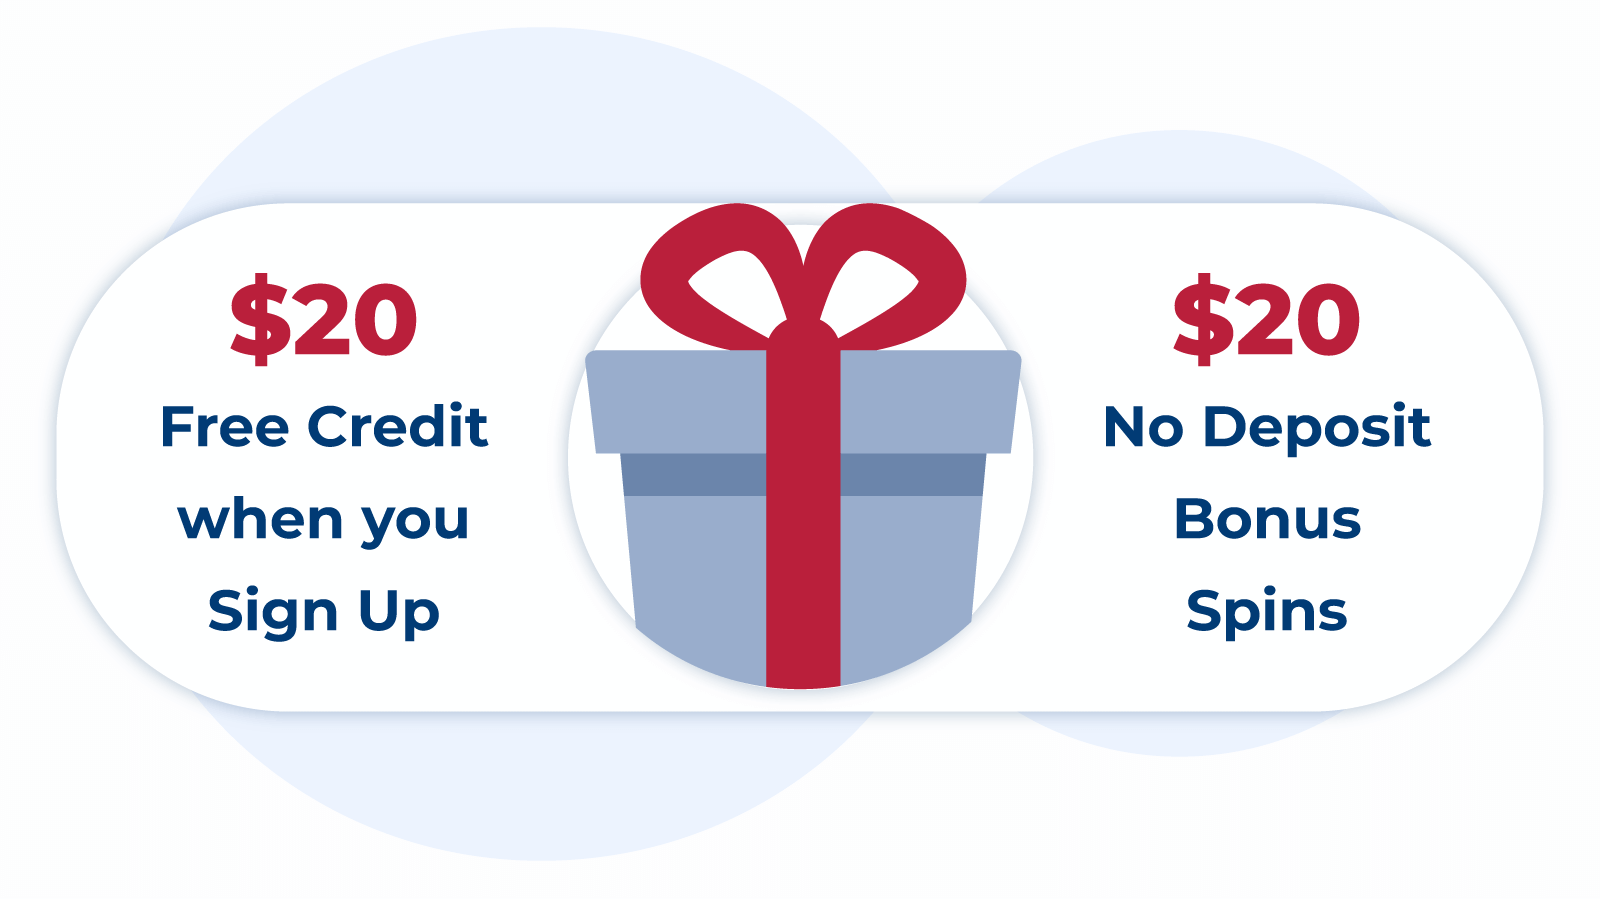 Types of $20 No Deposit Bonuses